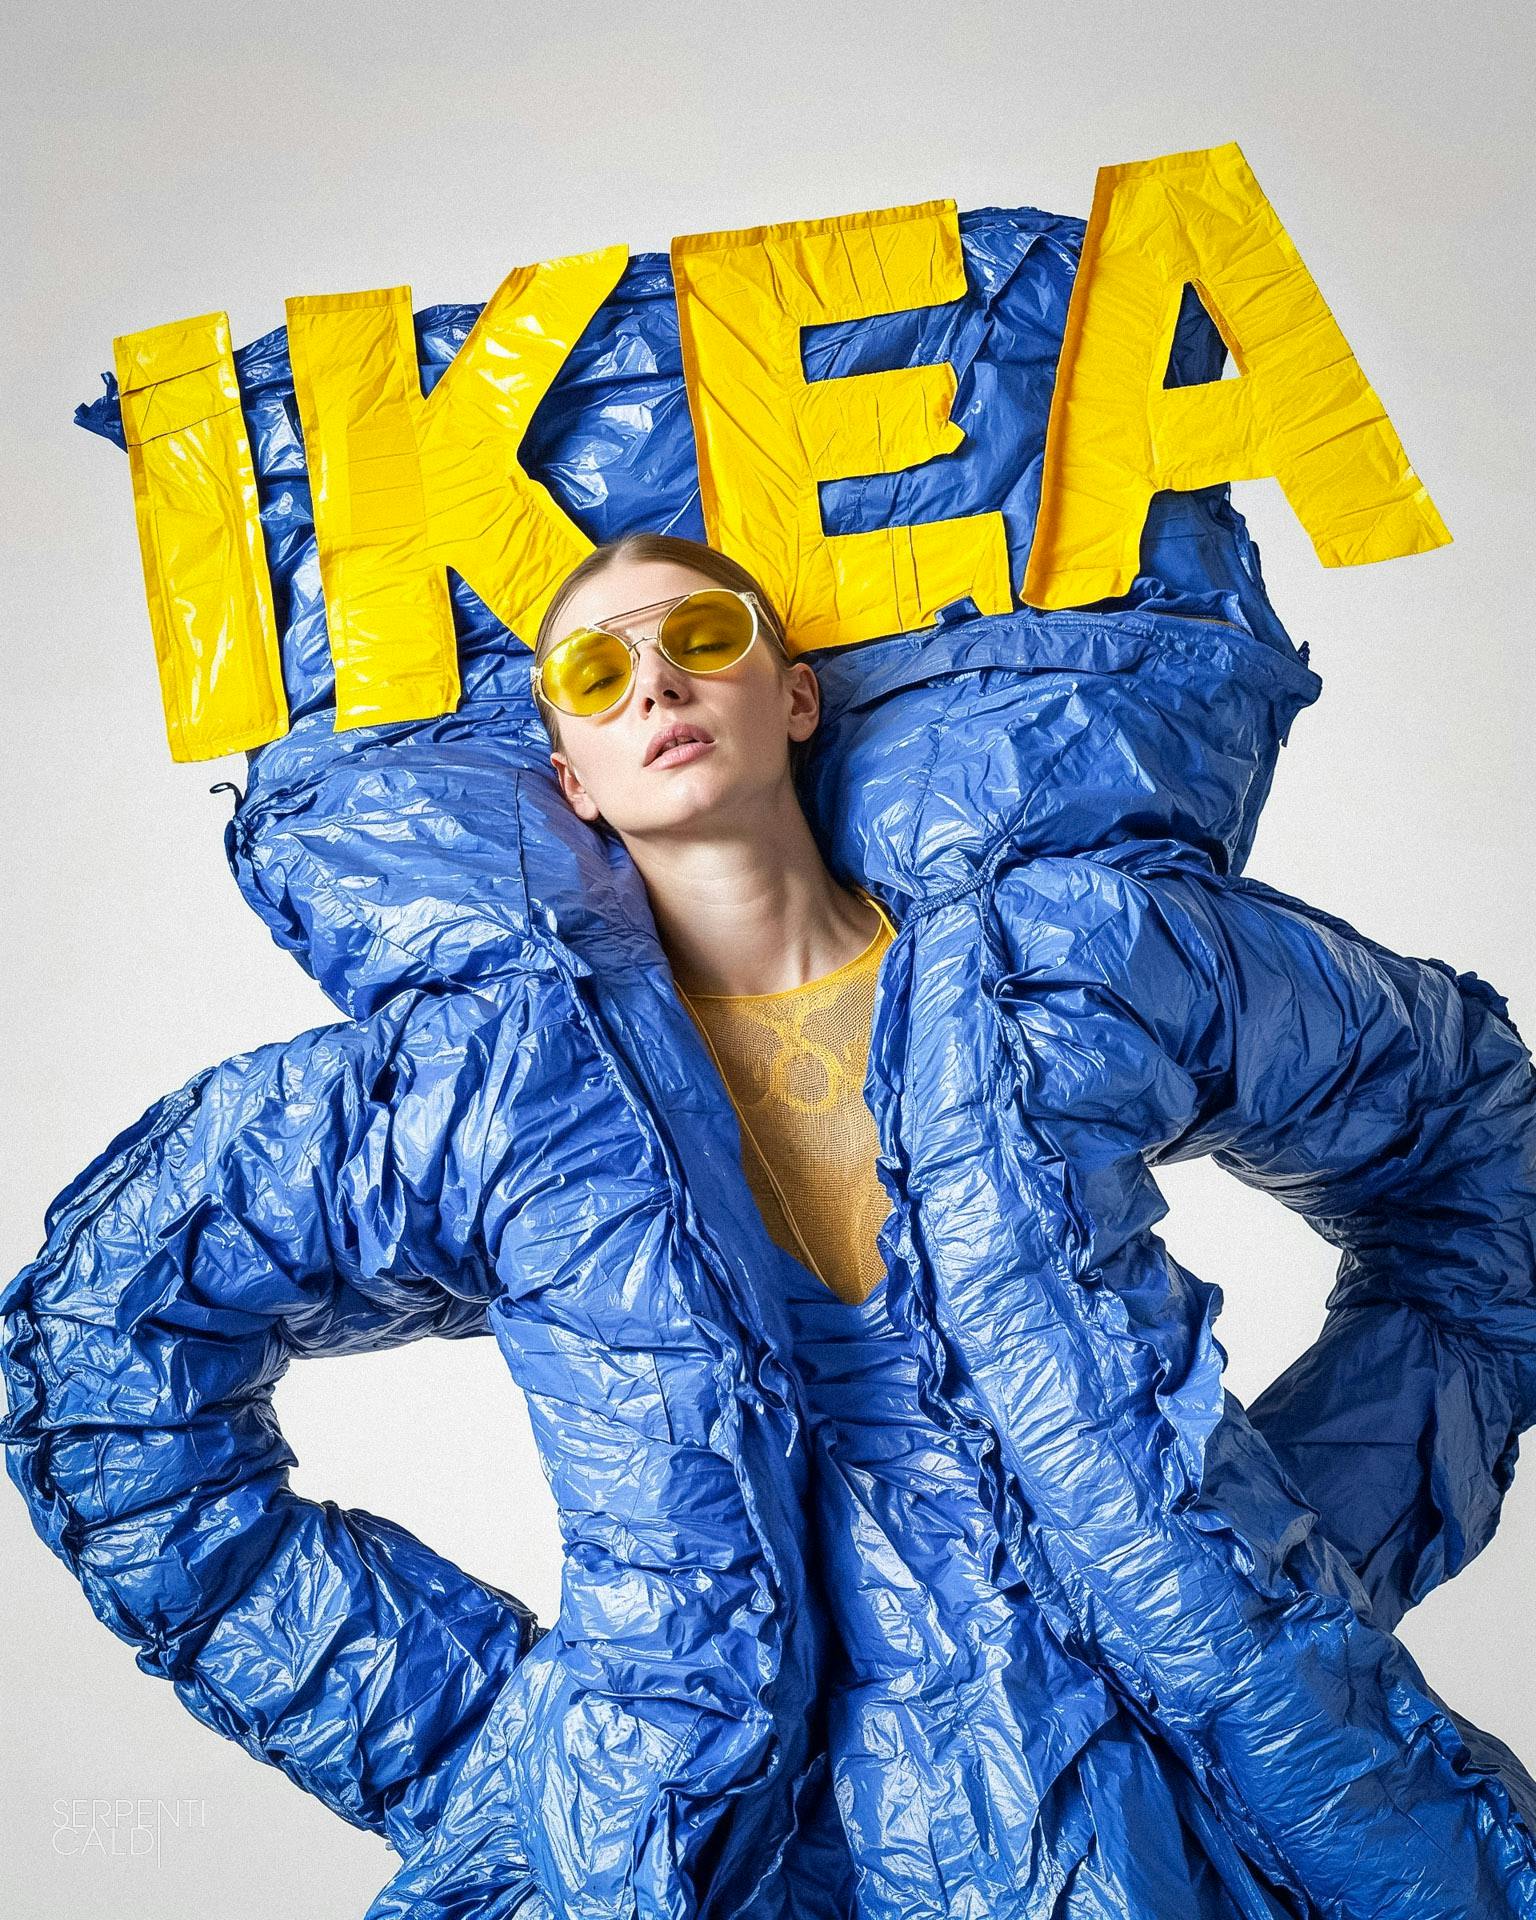 IKEA ad